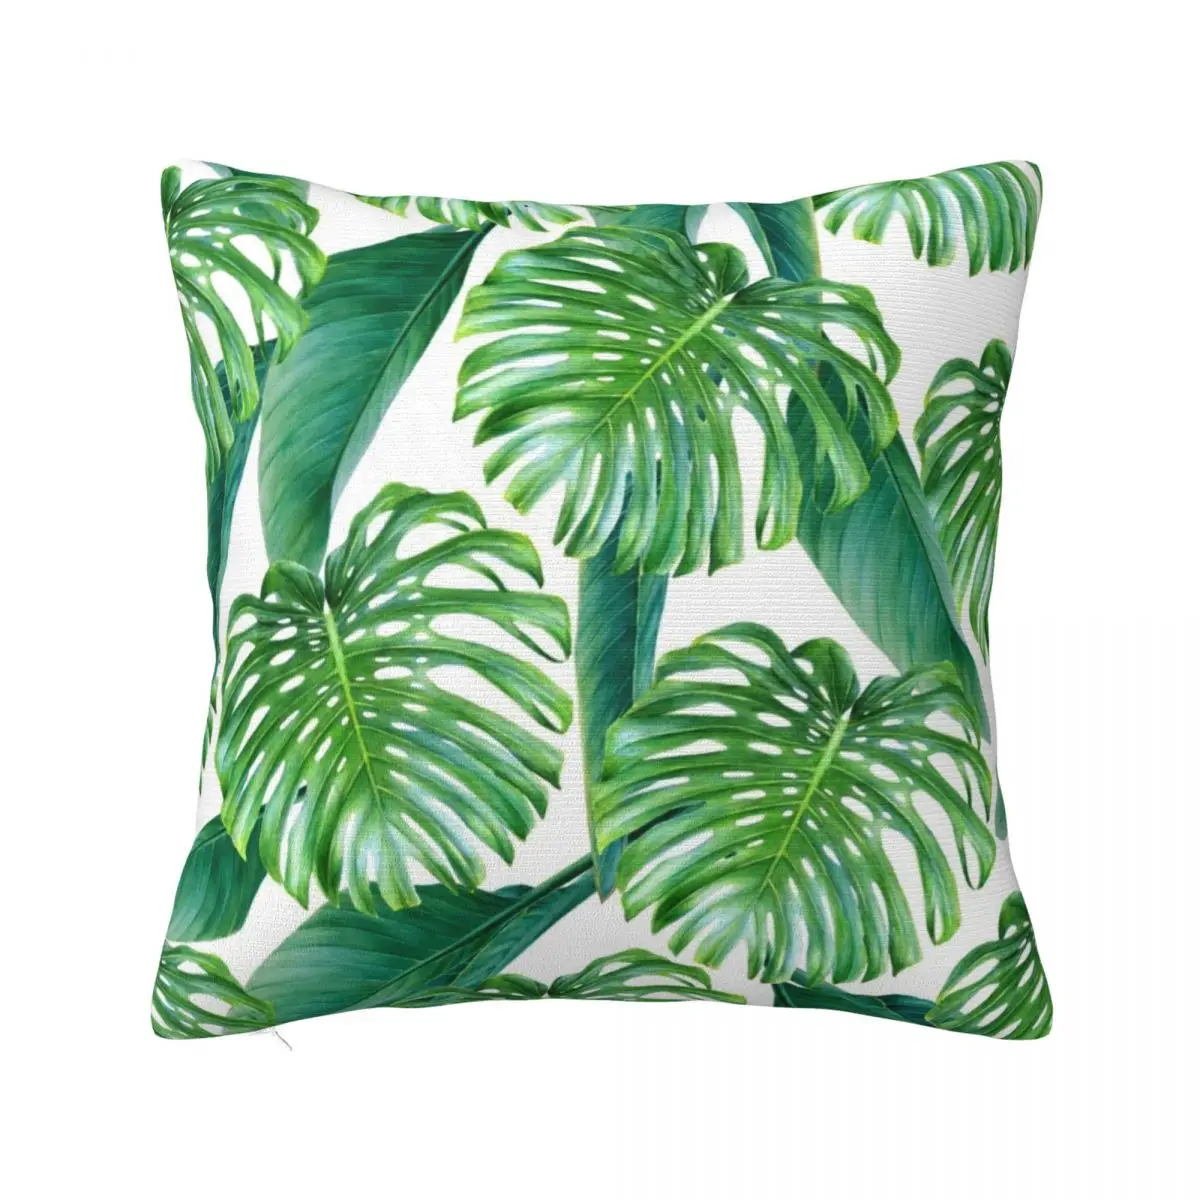 

Green tropical leaves VI Throw Pillow ornamental pillows Sofa Cushions Cover Luxury Cushion Cover